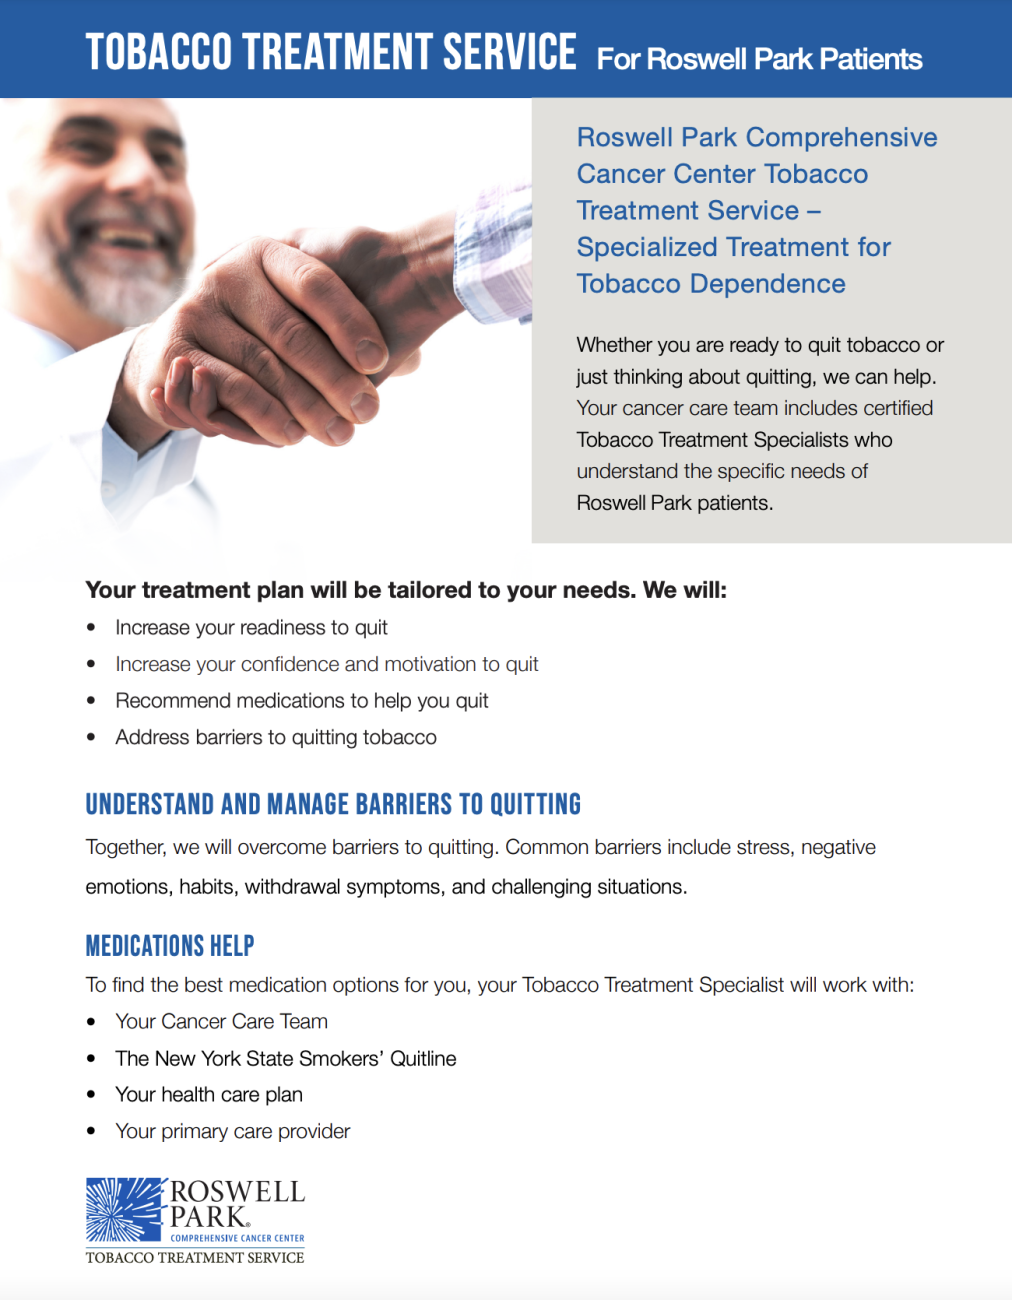 obacco Treatment Services brochure screenshot 